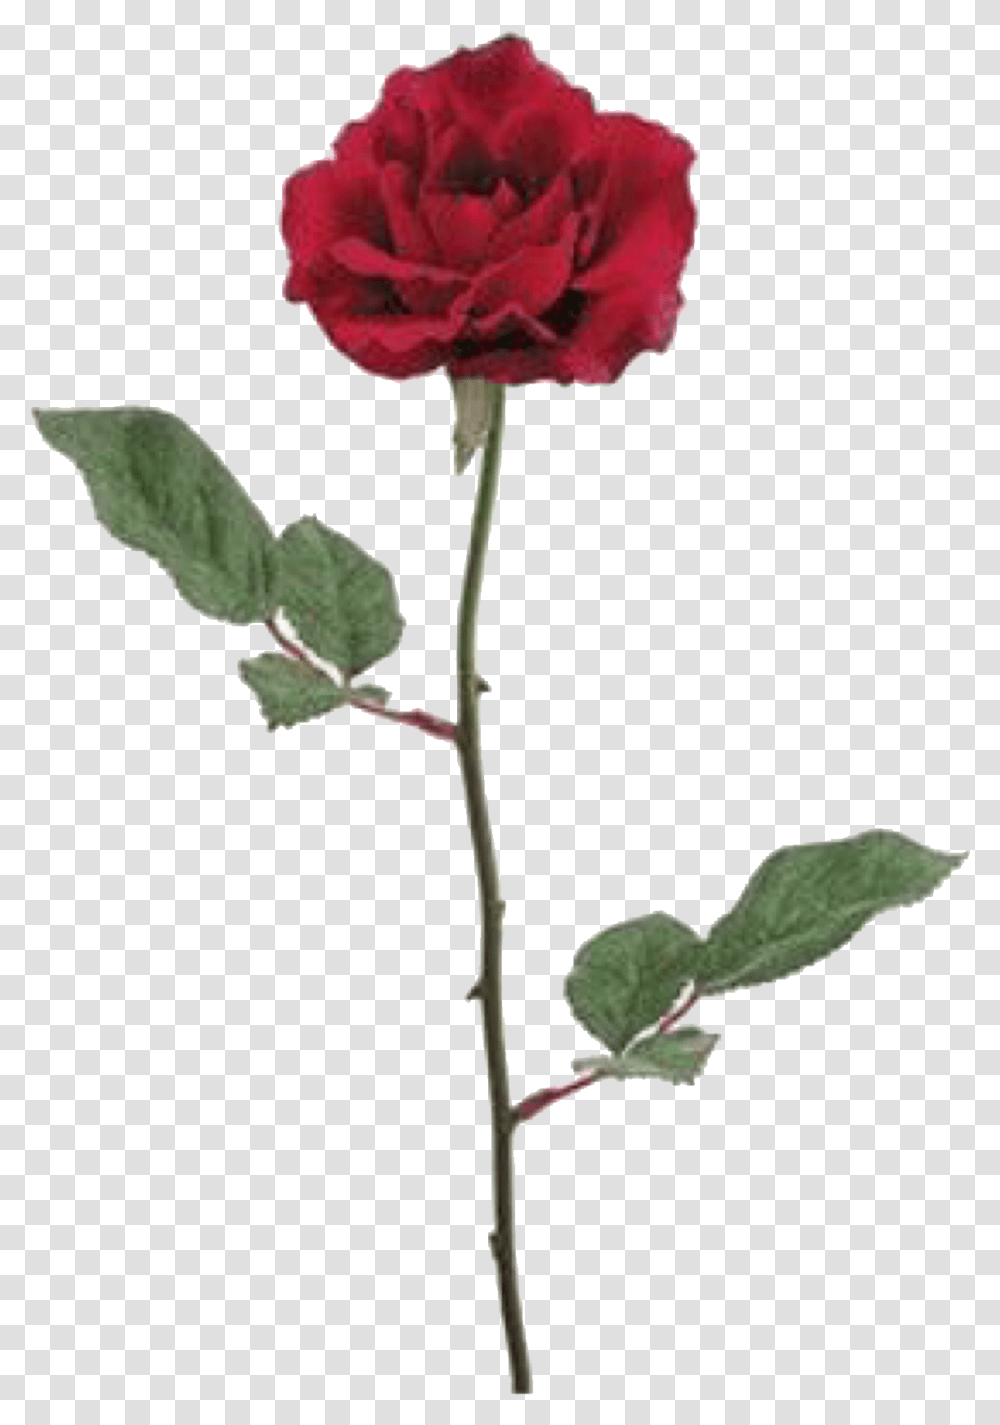 Red Roses Silk Flower, Plant, Blossom, Petal, Carnation Transparent Png